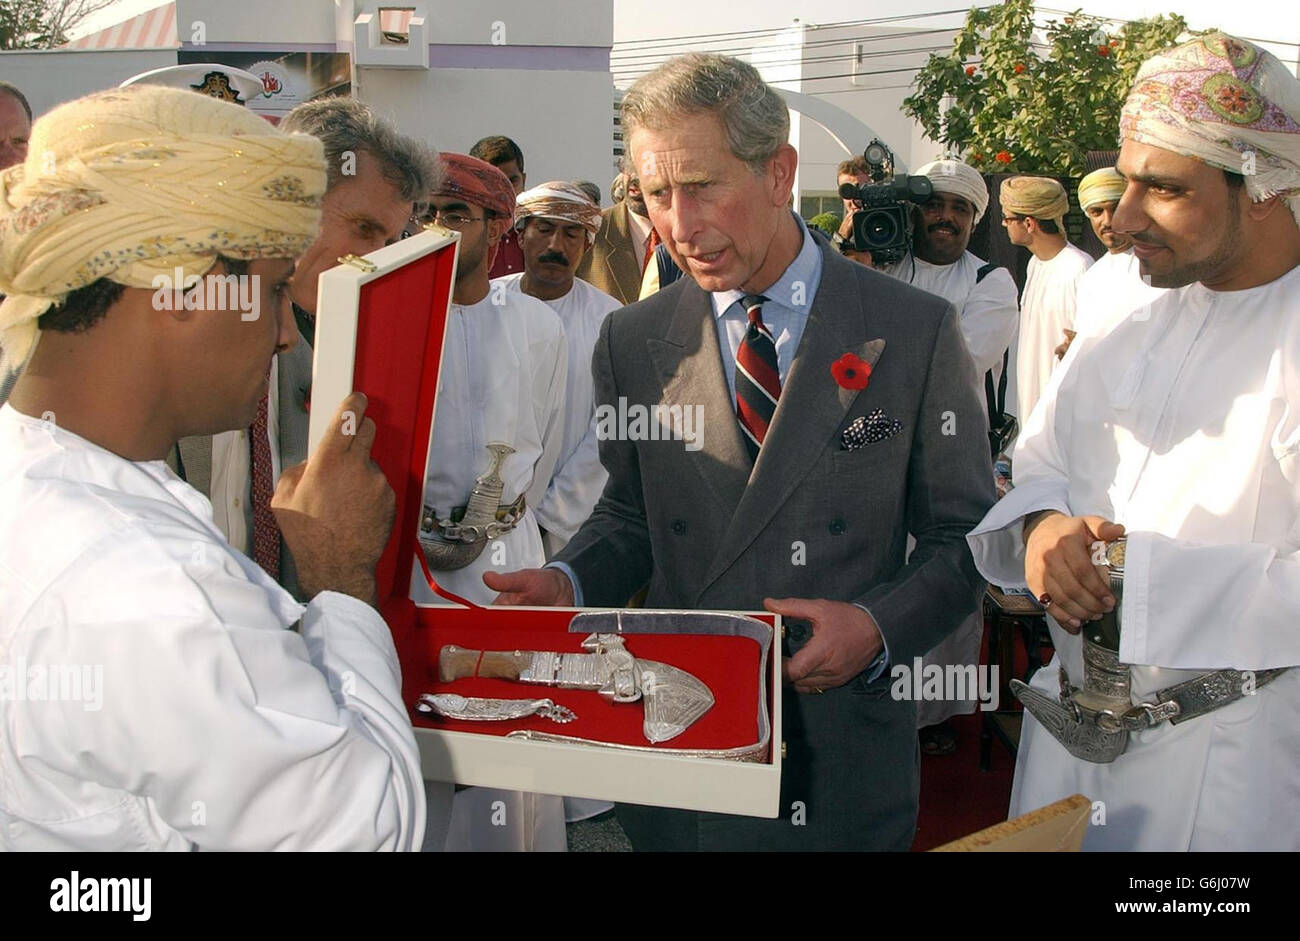 Il Principe di Galles viene presentato con un tradizionale pugnale decorativo, durante una visita alla vetrina delle giovani imprese Omani, a Muscat, la capitale dello stato arabo dell'Oman. Foto Stock